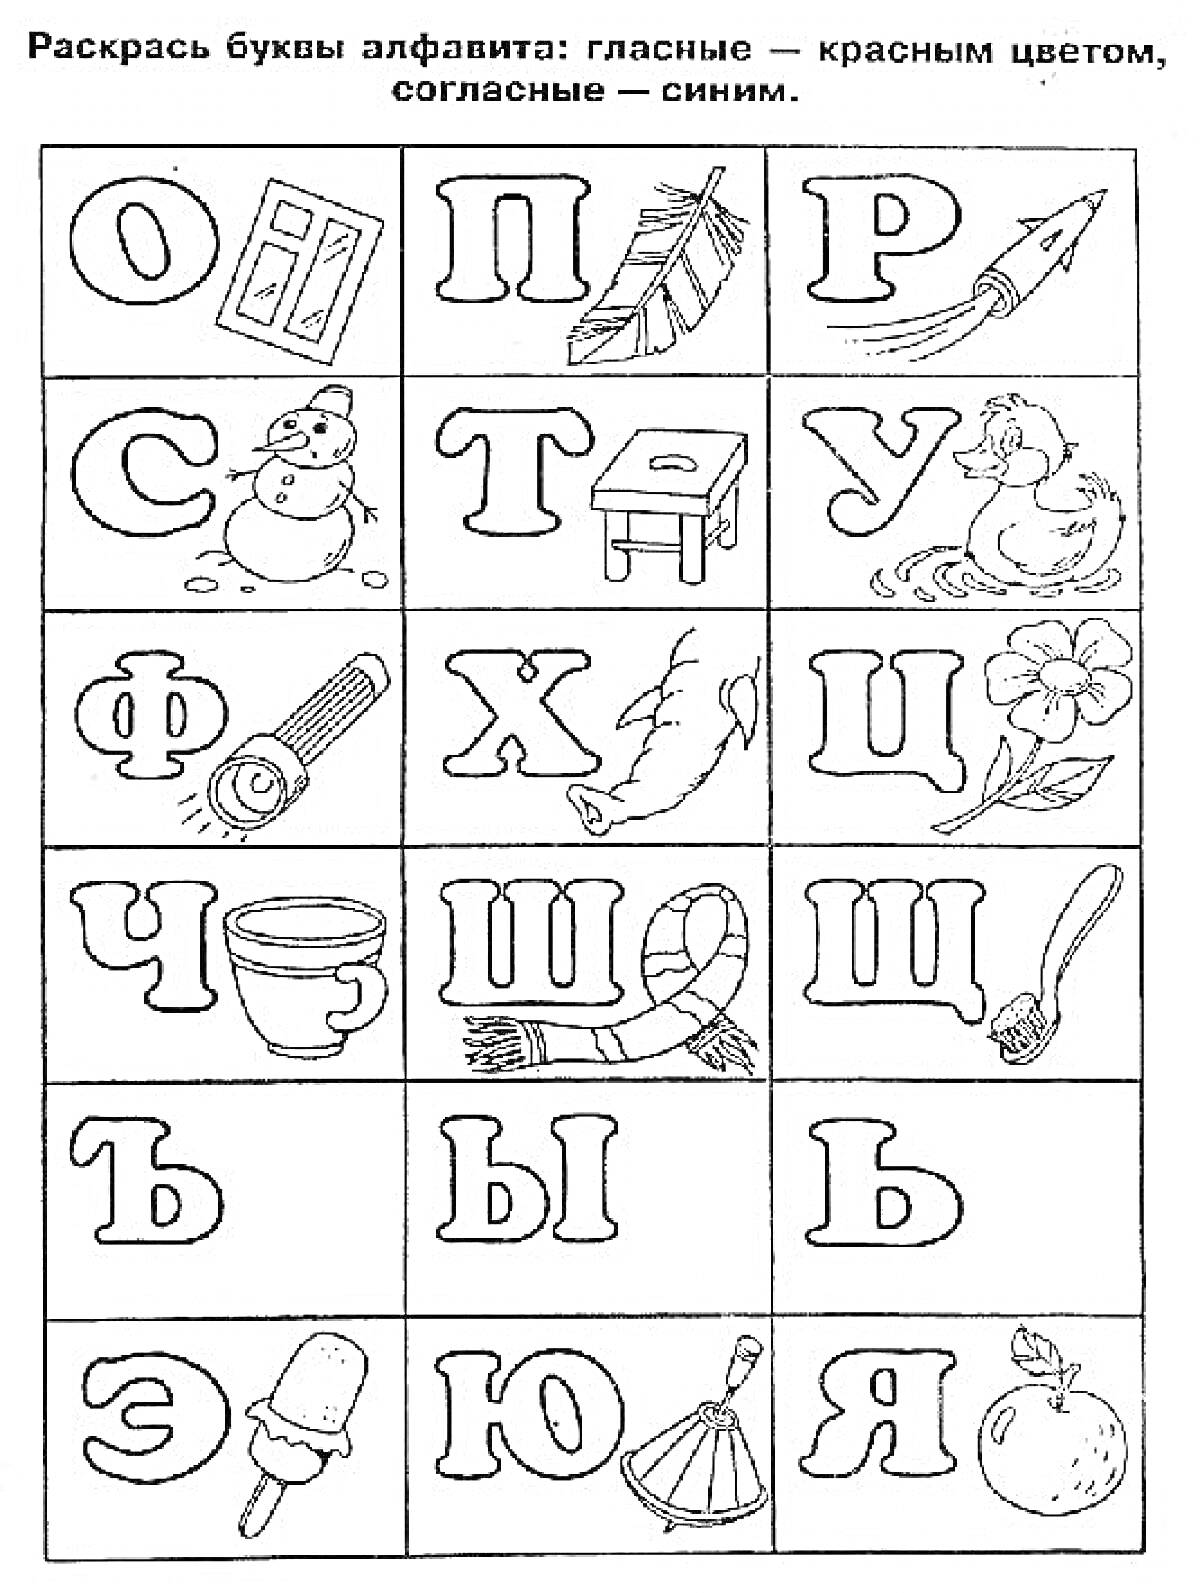 Раскраска Раскраска с буквами русского алфавита и соответствующими объектами